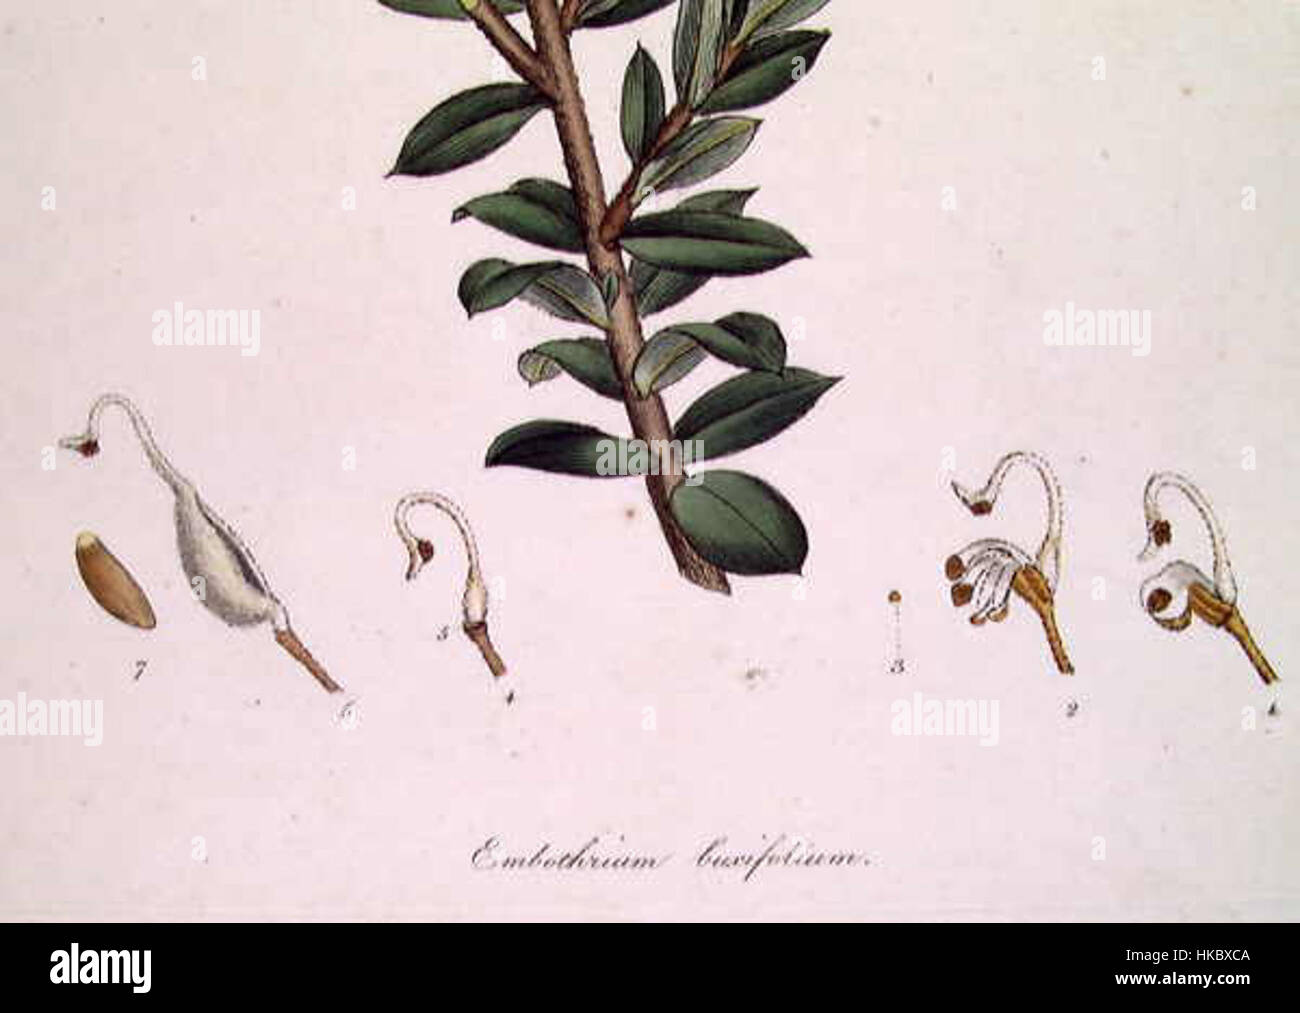 Embothrium (Grevillea) buxifolium detail Stock Photo